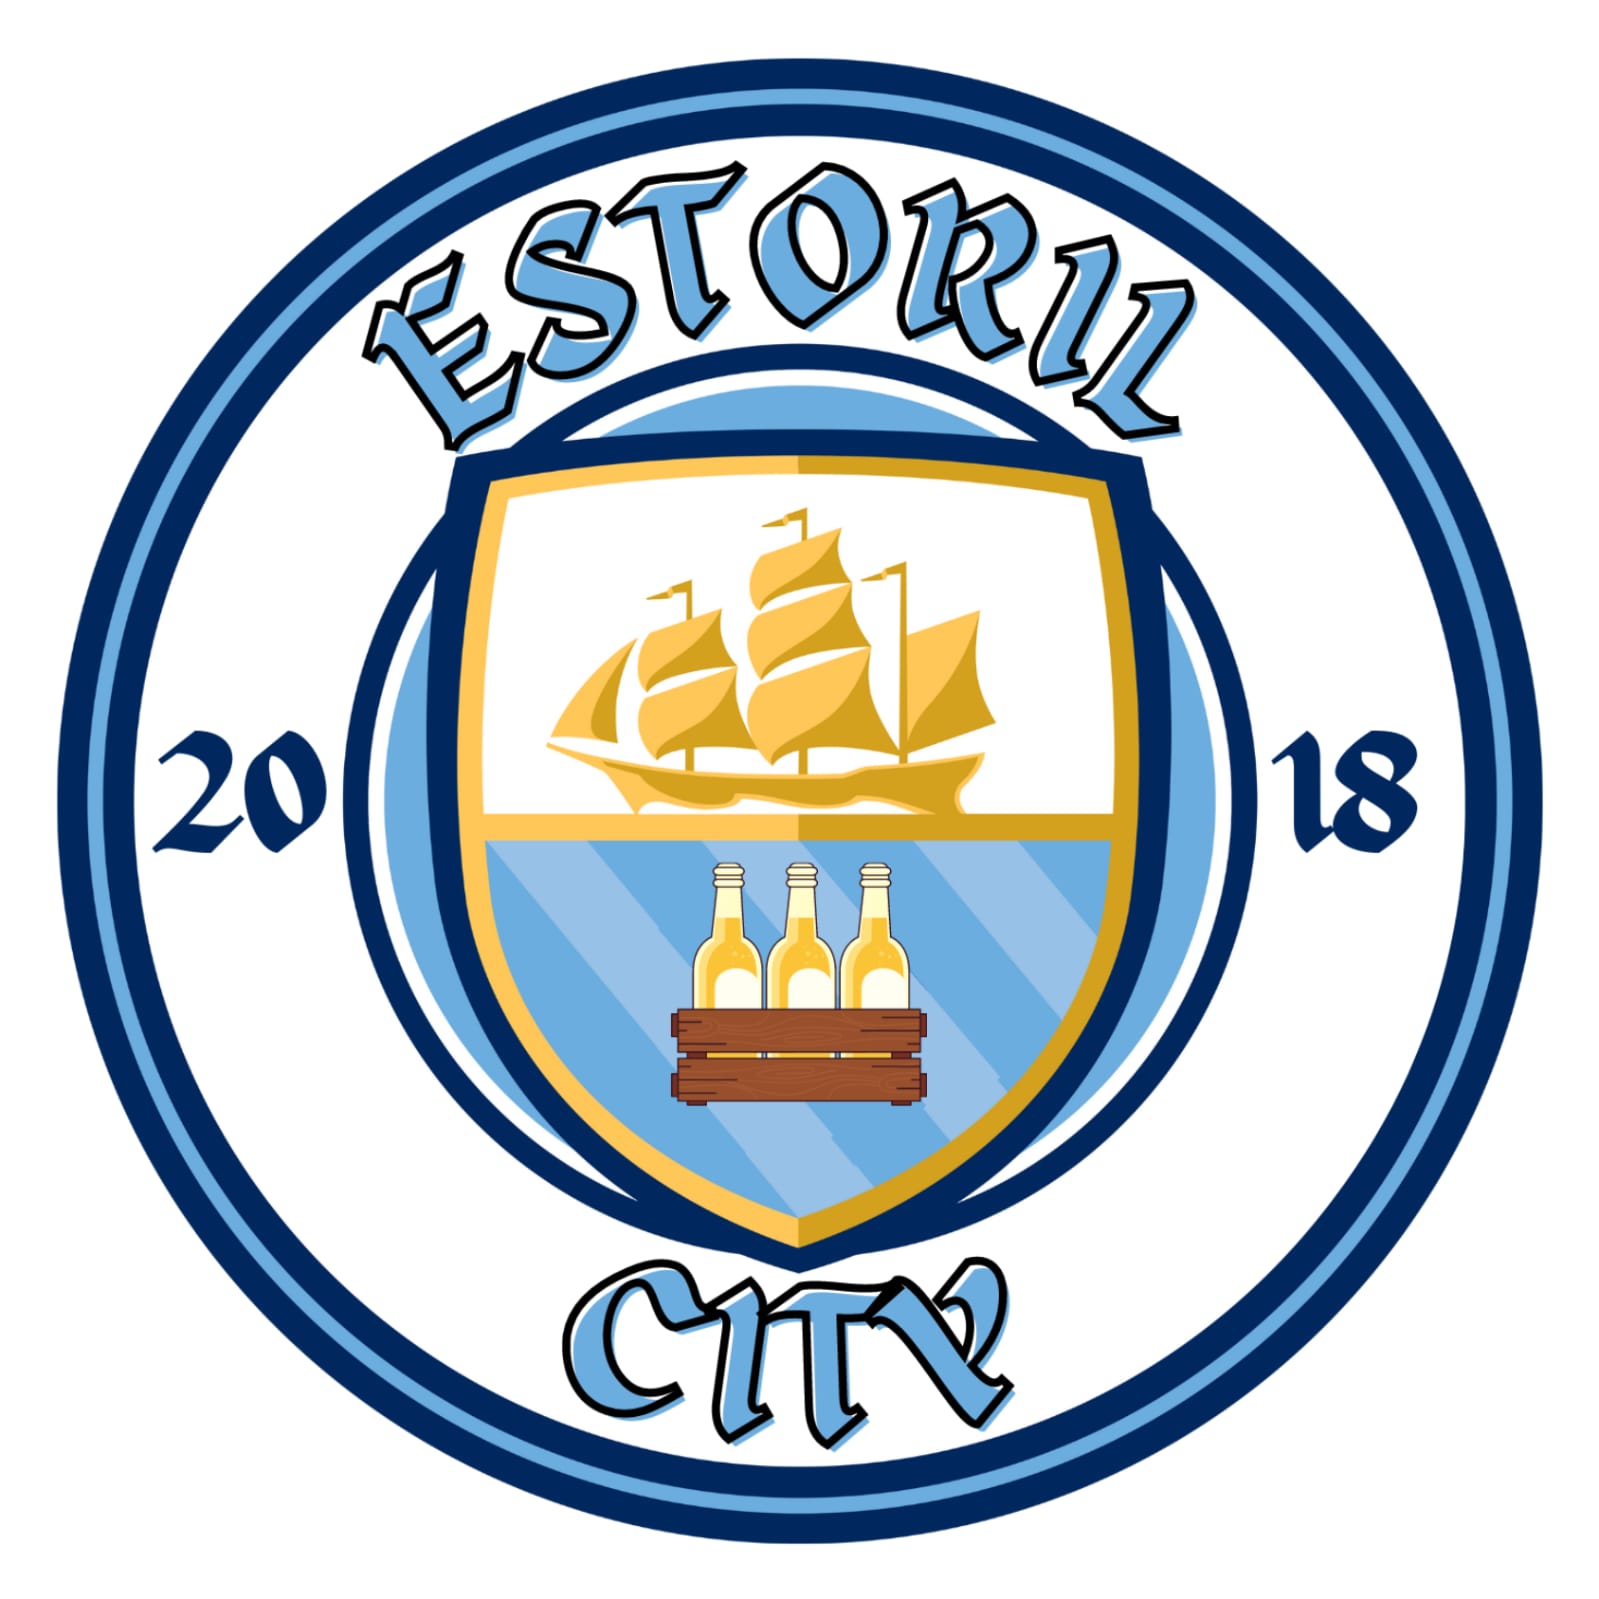 Estoril City FC